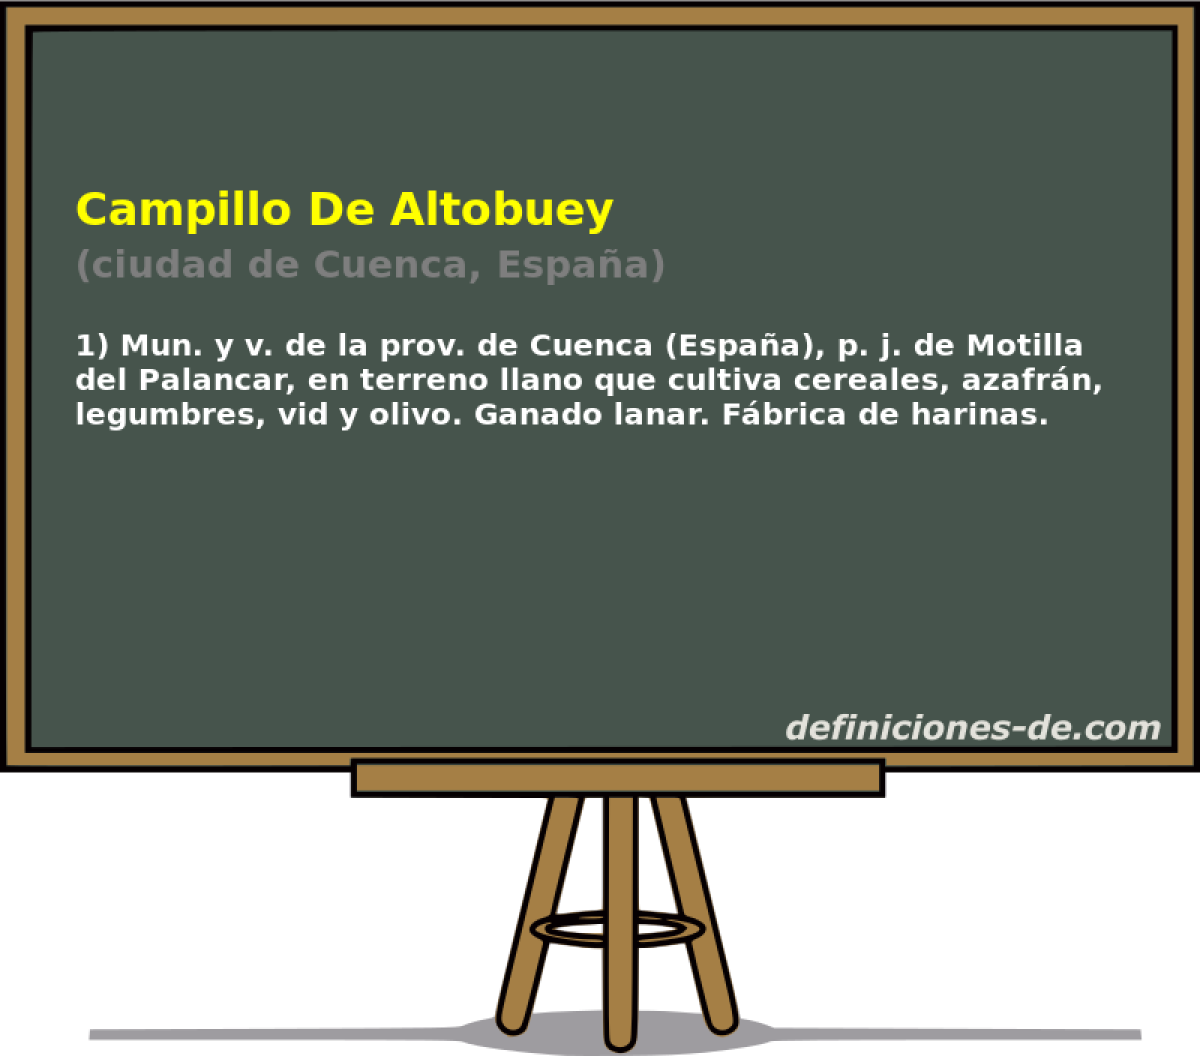 Campillo De Altobuey (ciudad de Cuenca, Espaa)